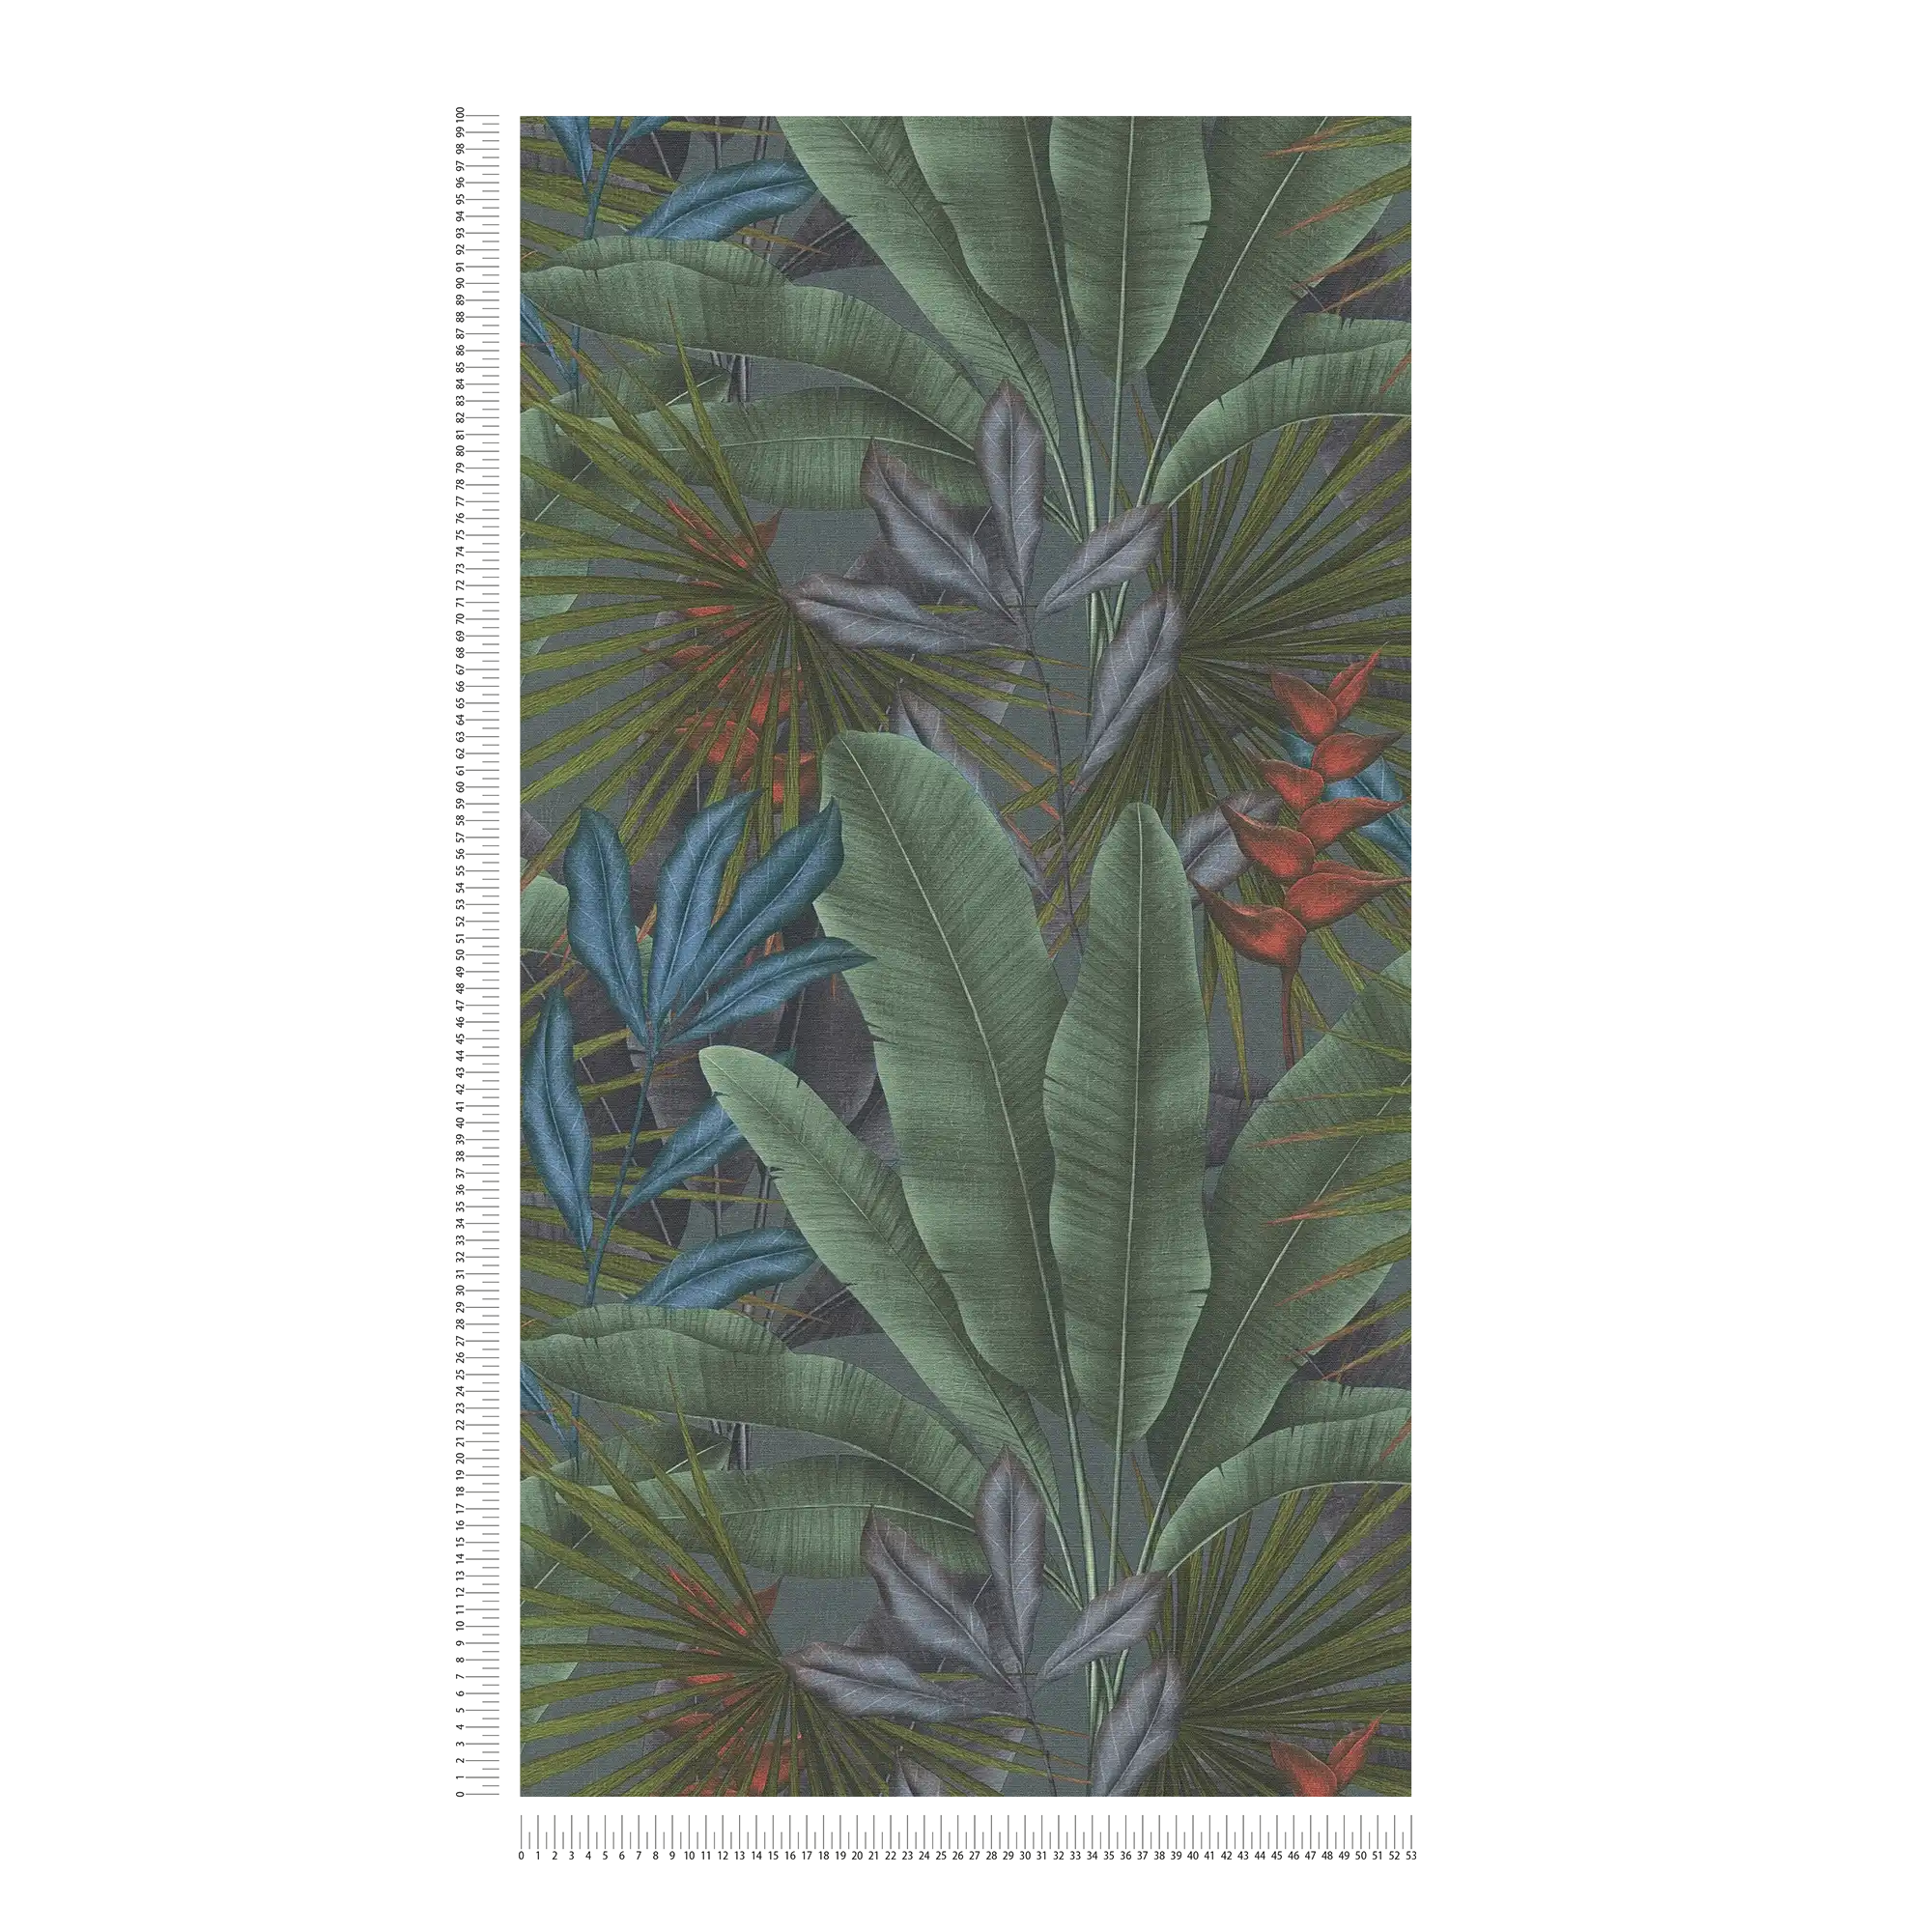             Papel pintado no tejido con estampado de hojas de selva y toques de color: gris, verde, rojo
        